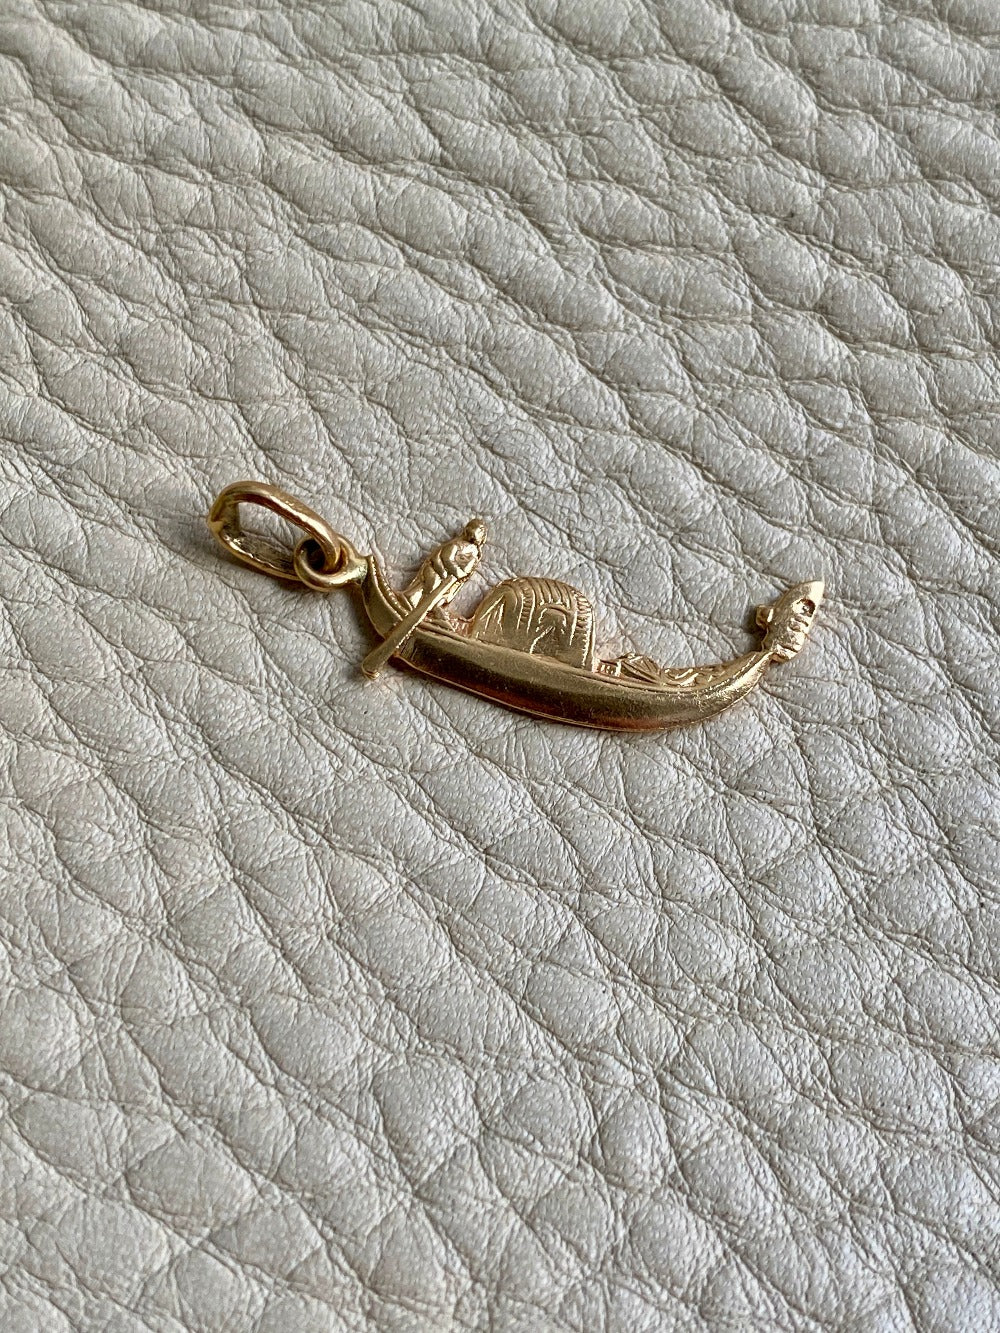 Vintage 18k gold detailed gondola boat pendant or charm